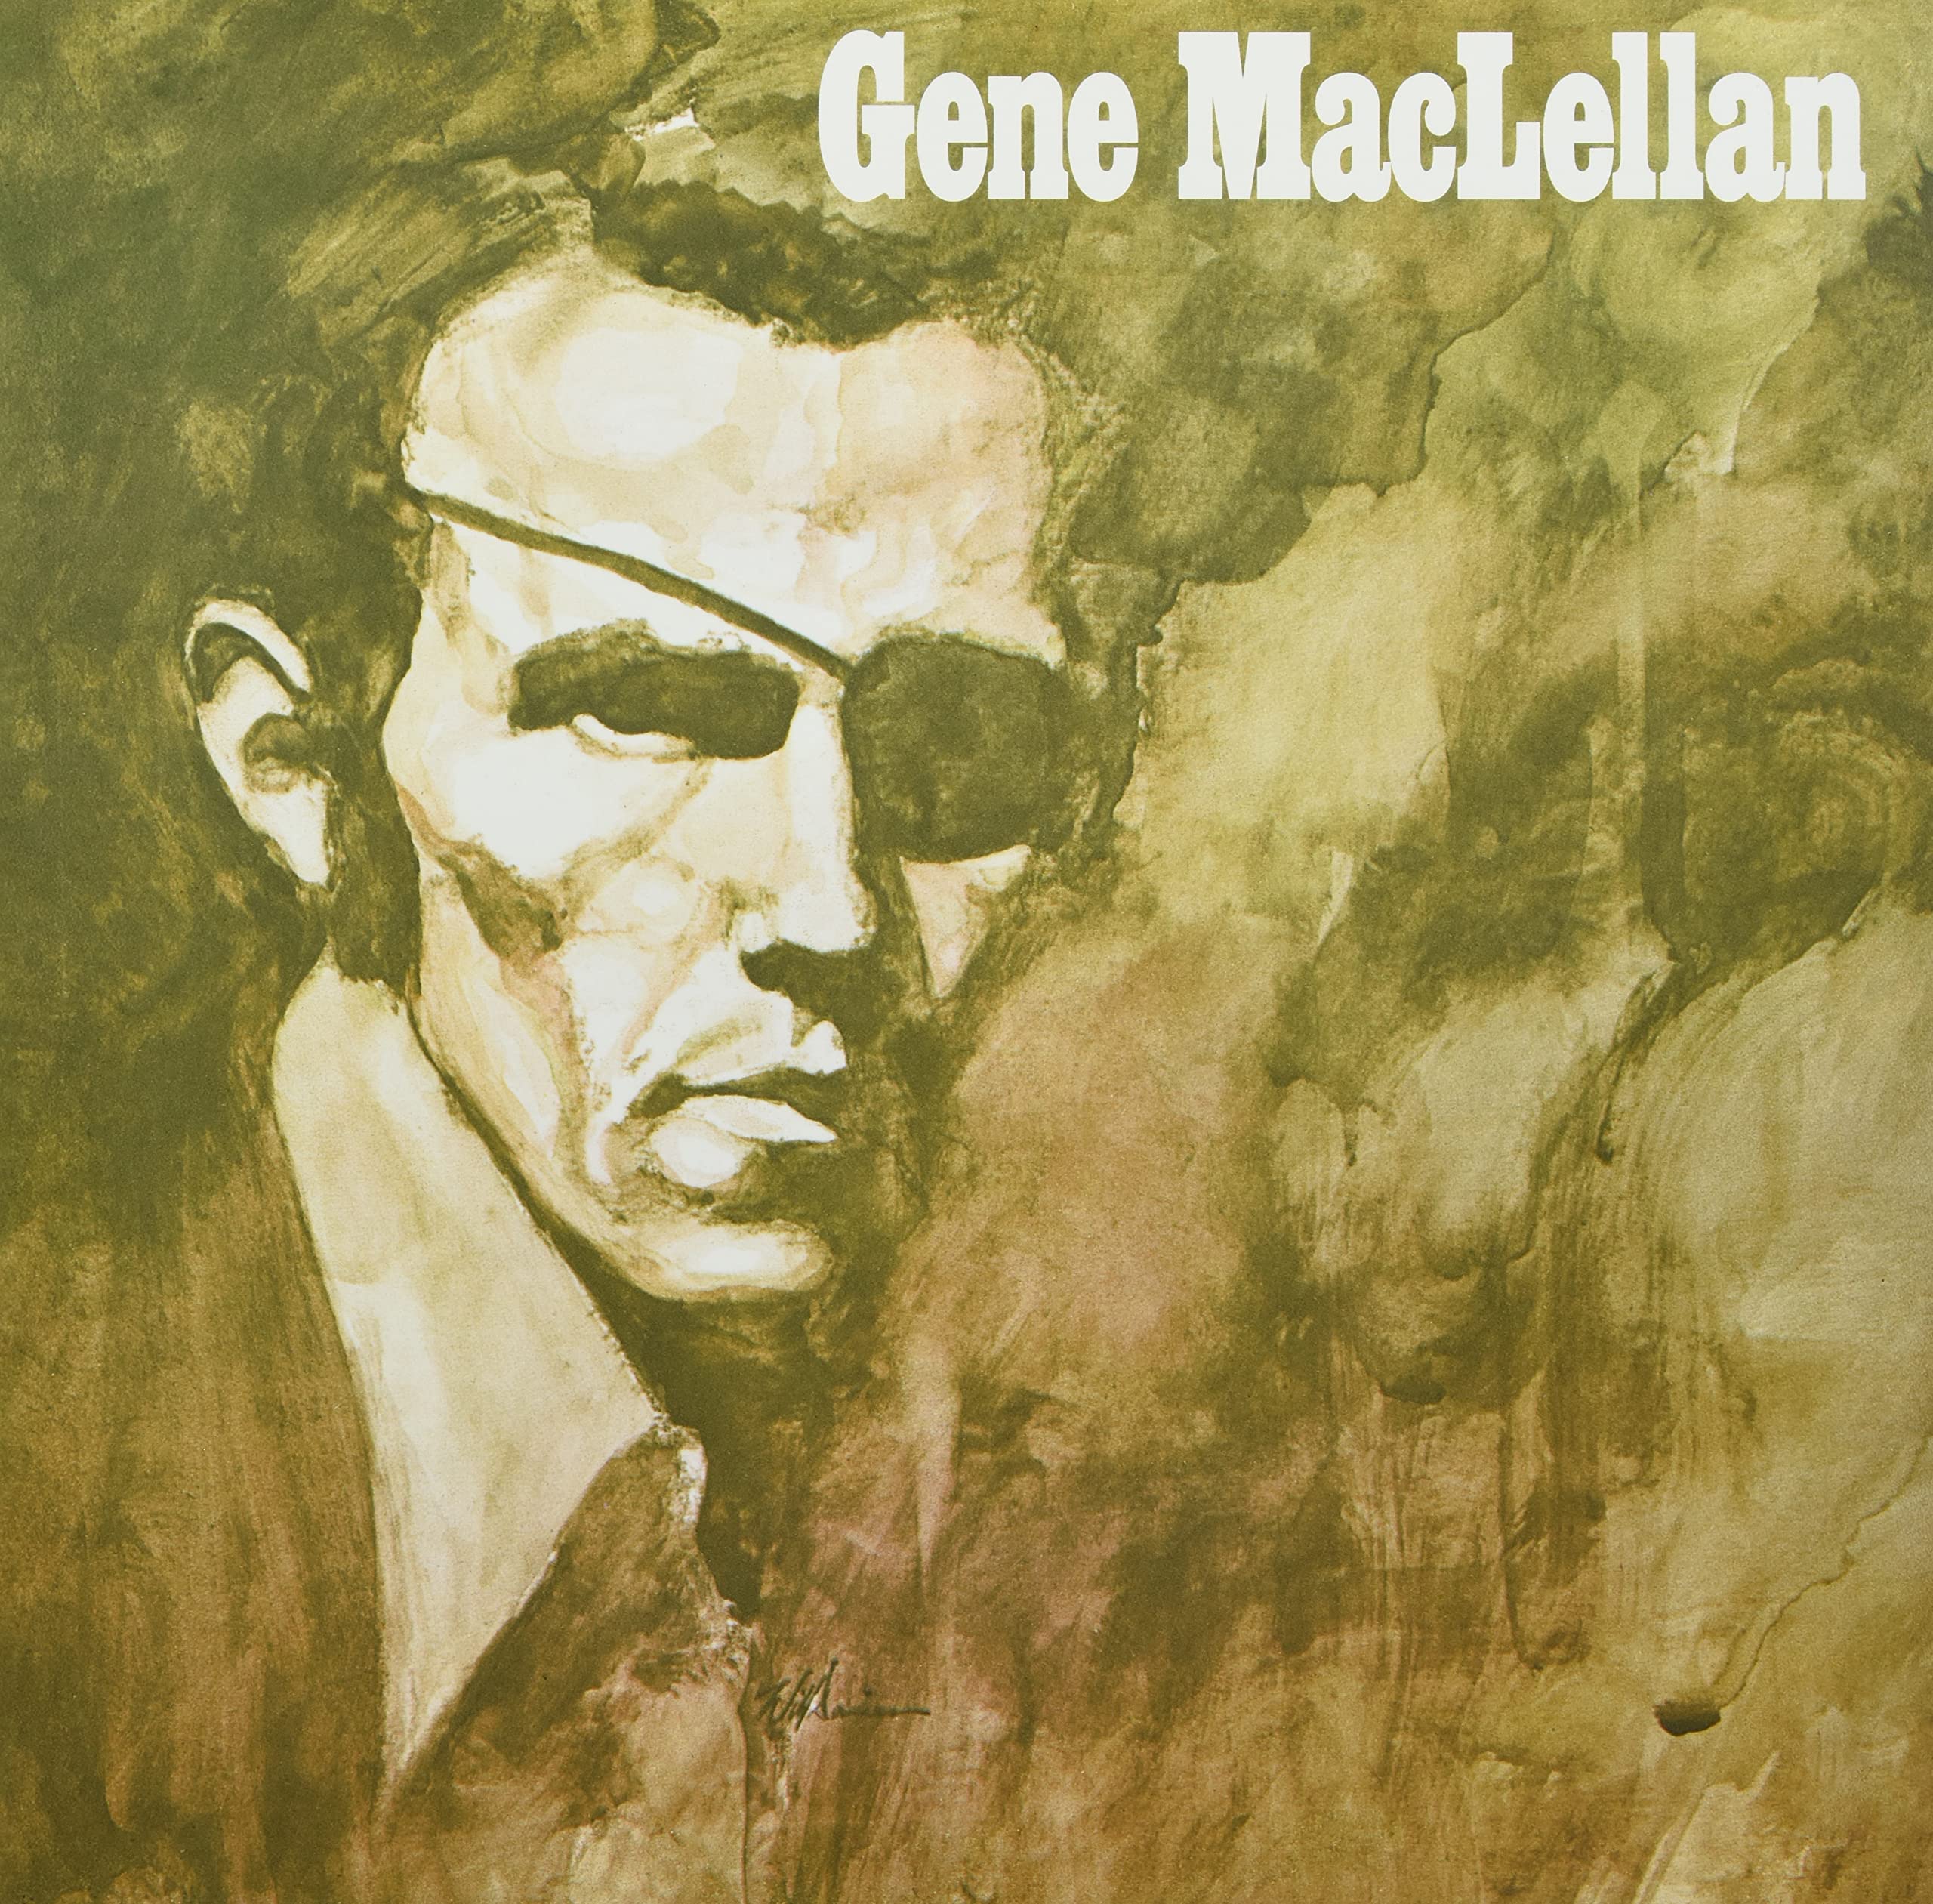 Gene MacLellan (180 Gram White Vinyl)